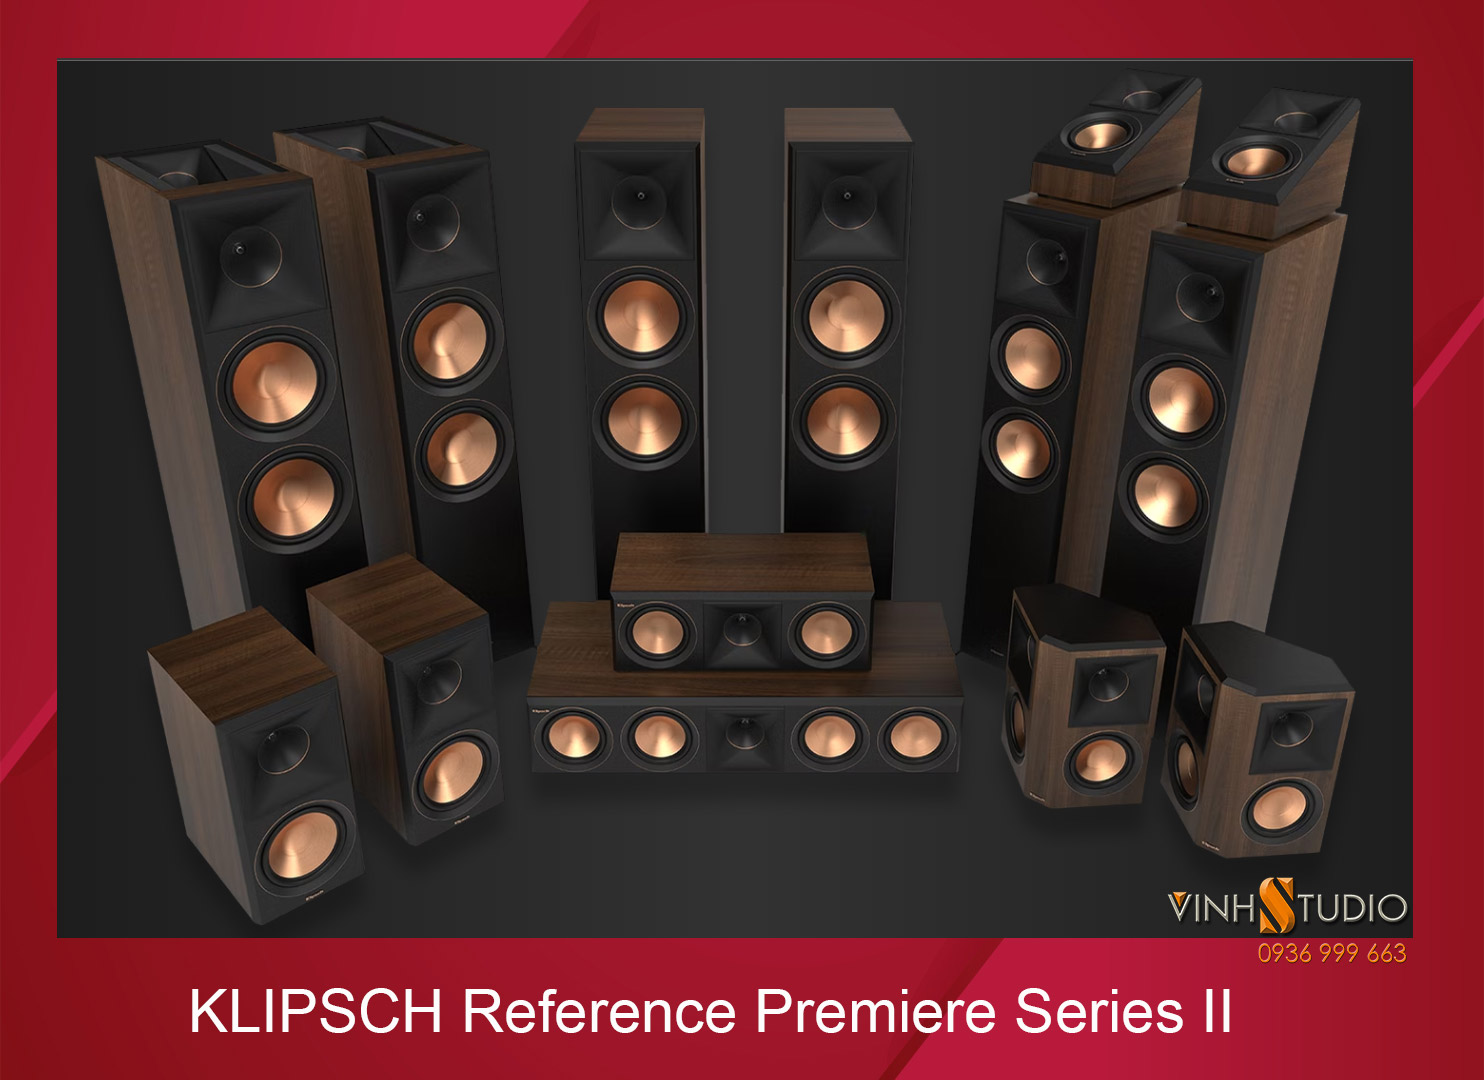 Loa Klipsch RP-6000F II đôi loa dòng Reference Premiere chất lượng cao có sẵn hàng tại Vinhstudio